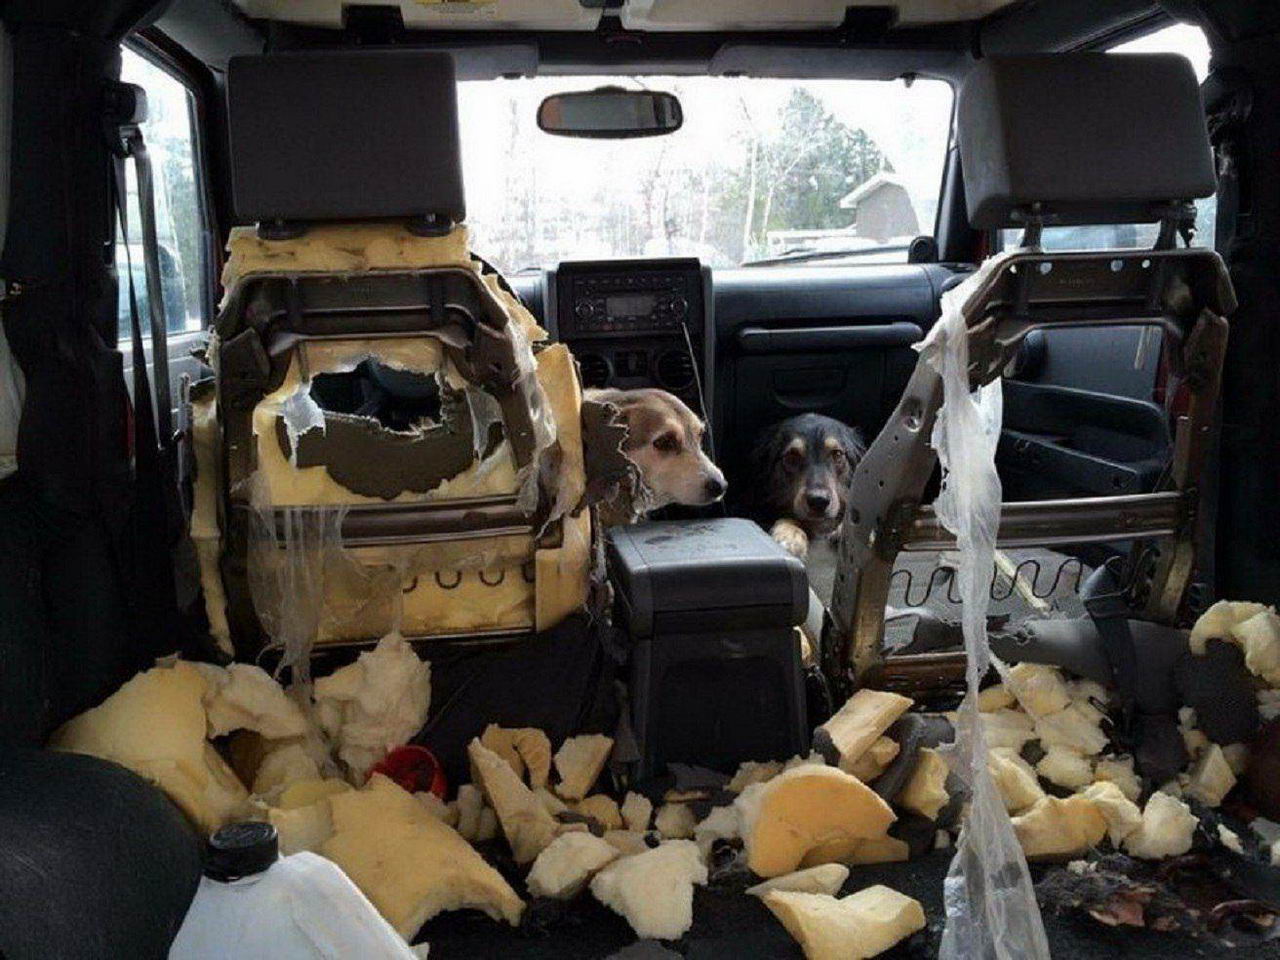 funny memes - dog destroys inside of car